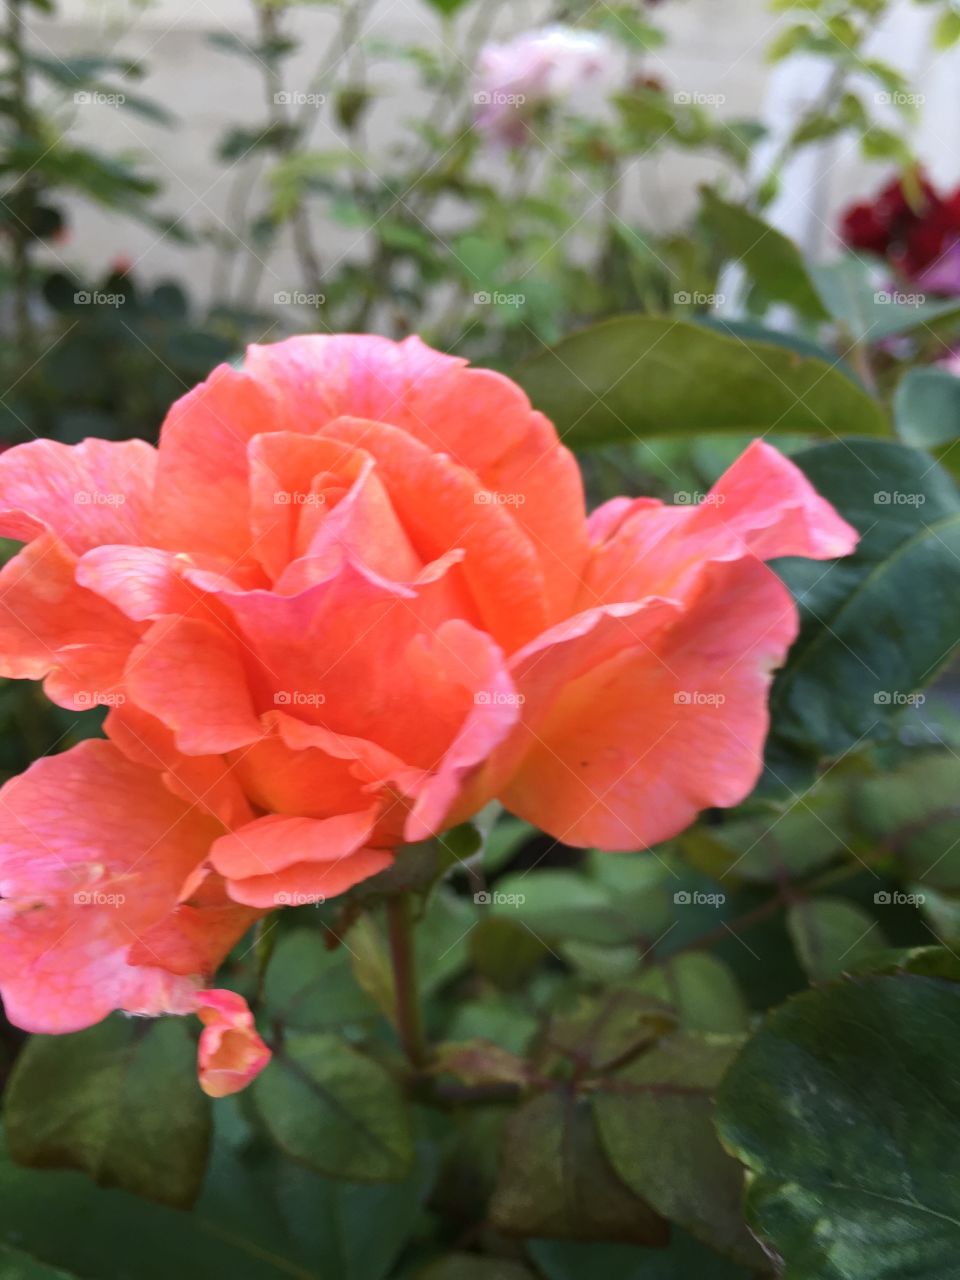 A driveway California rose